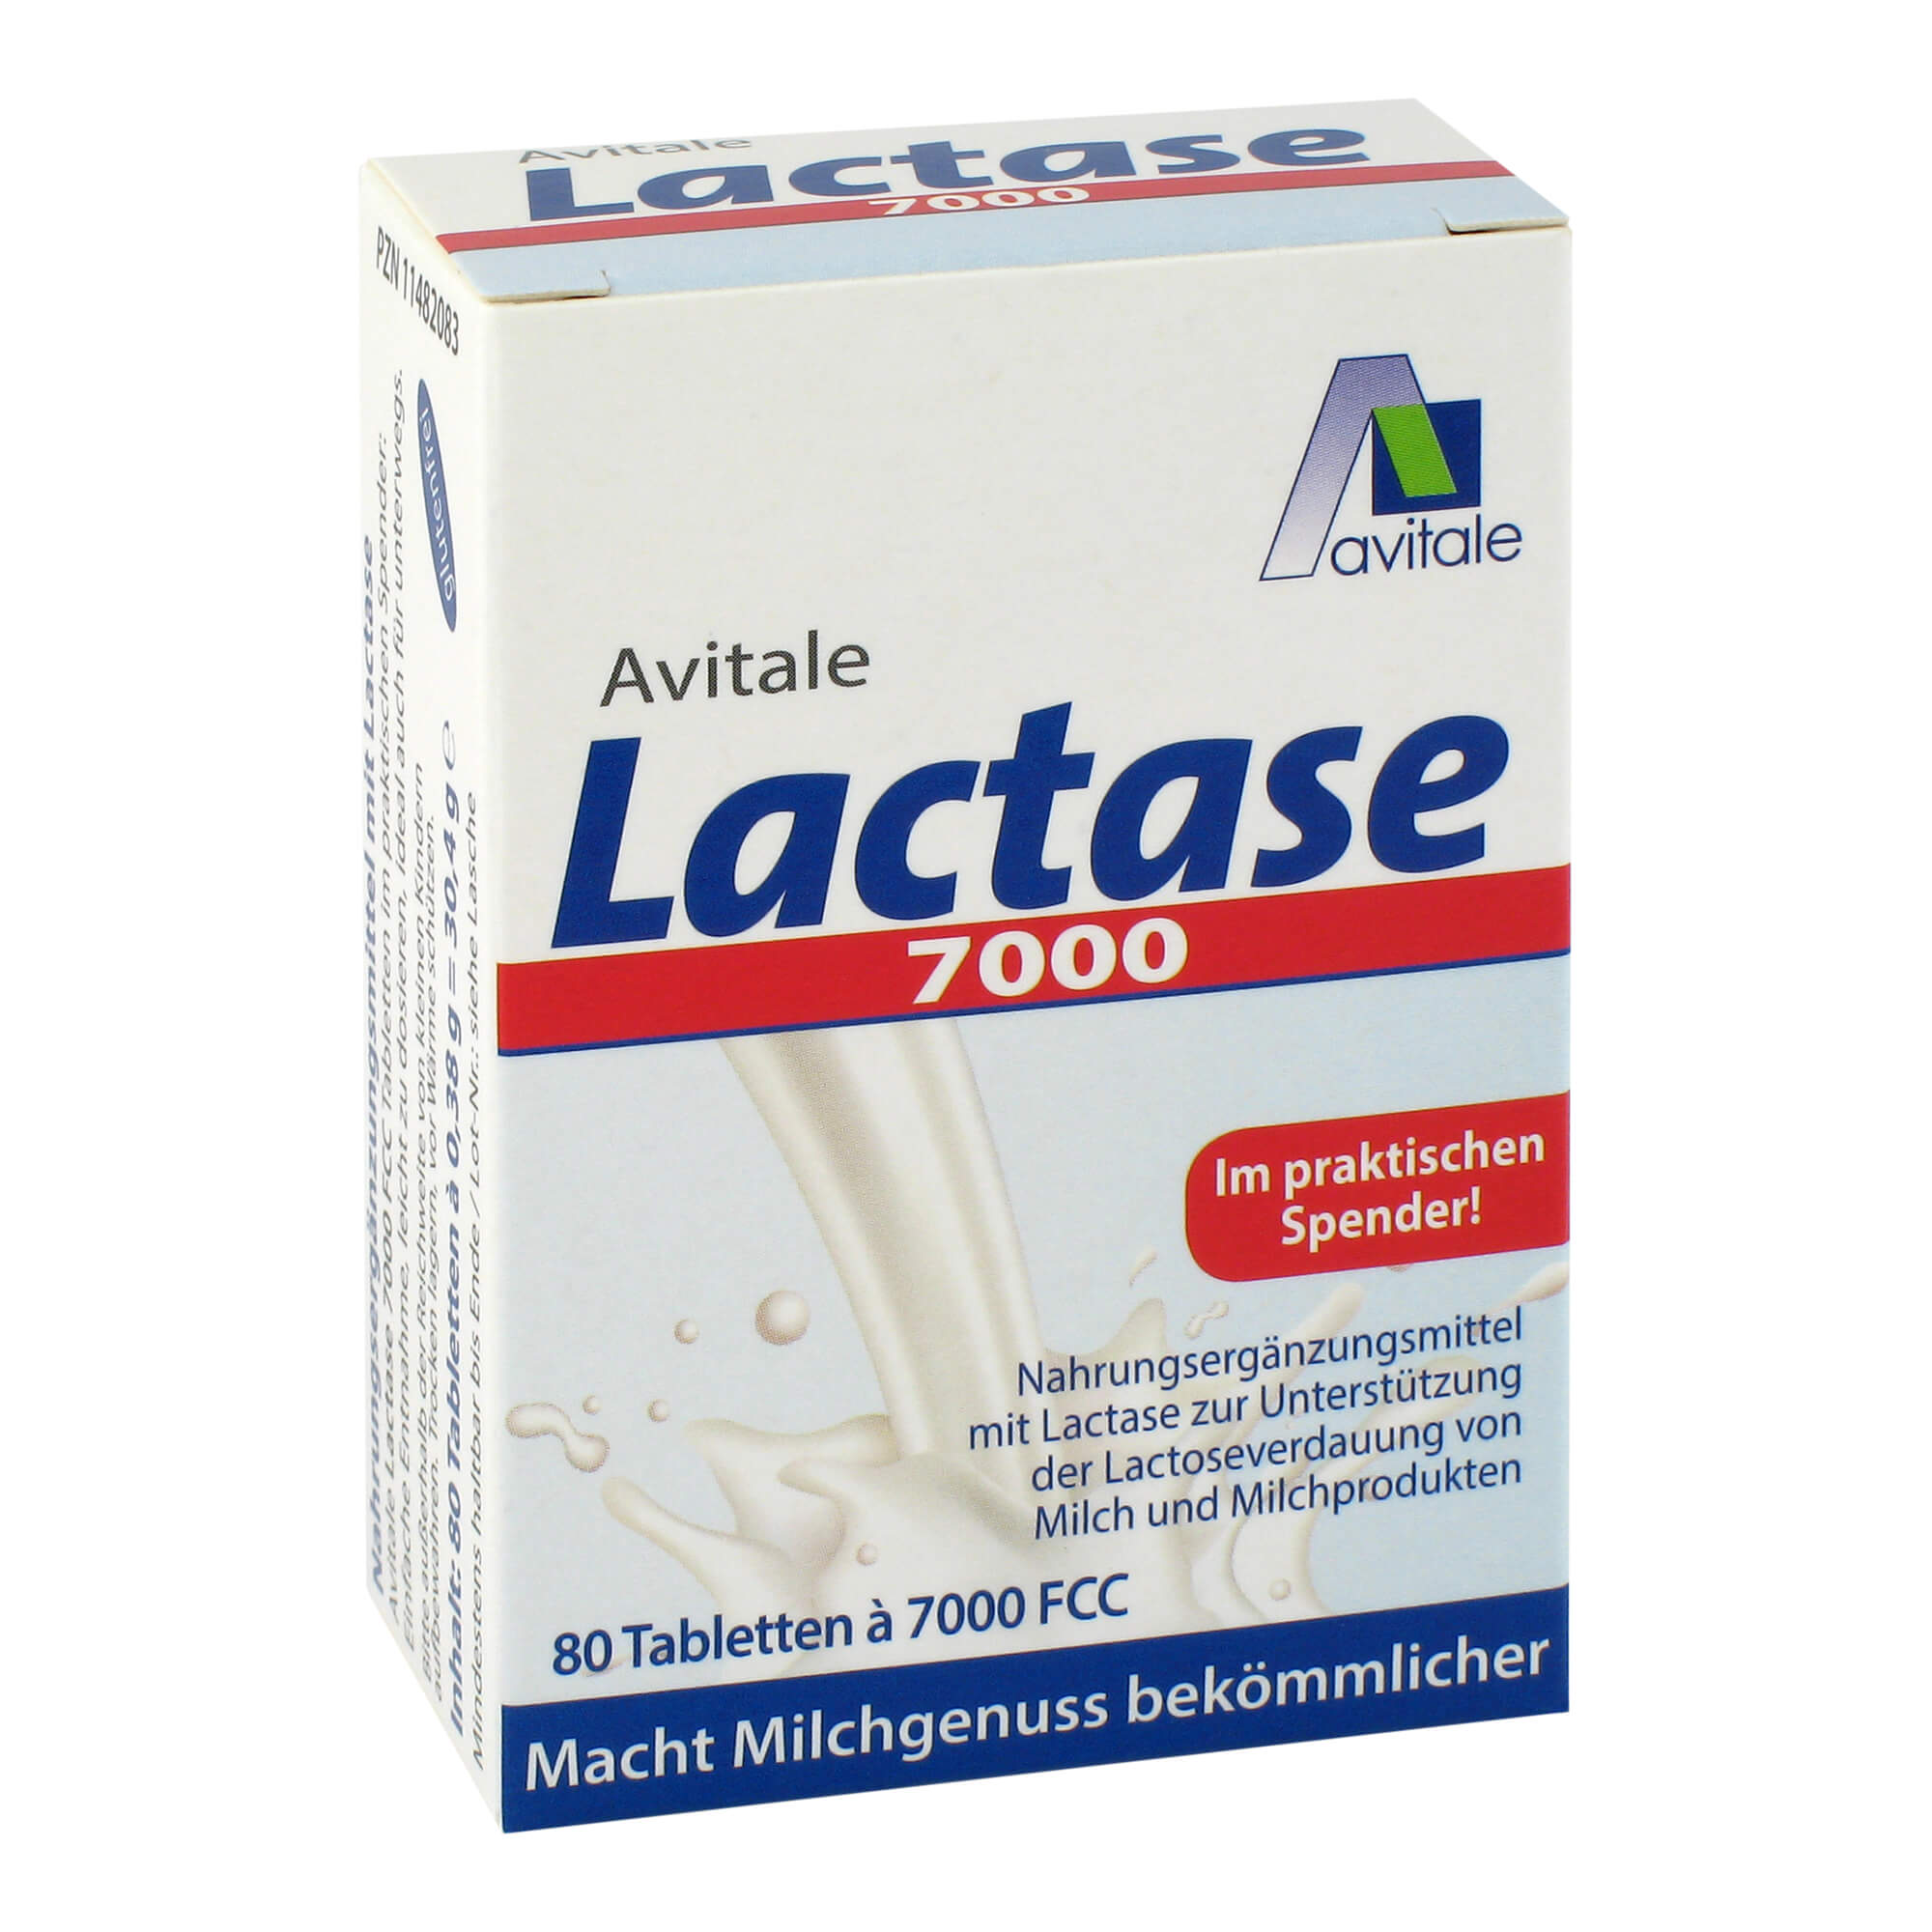 Nahrungsergänzungsmittel mit Lactase zur Anwendung bei Lactose-Intoleranz.